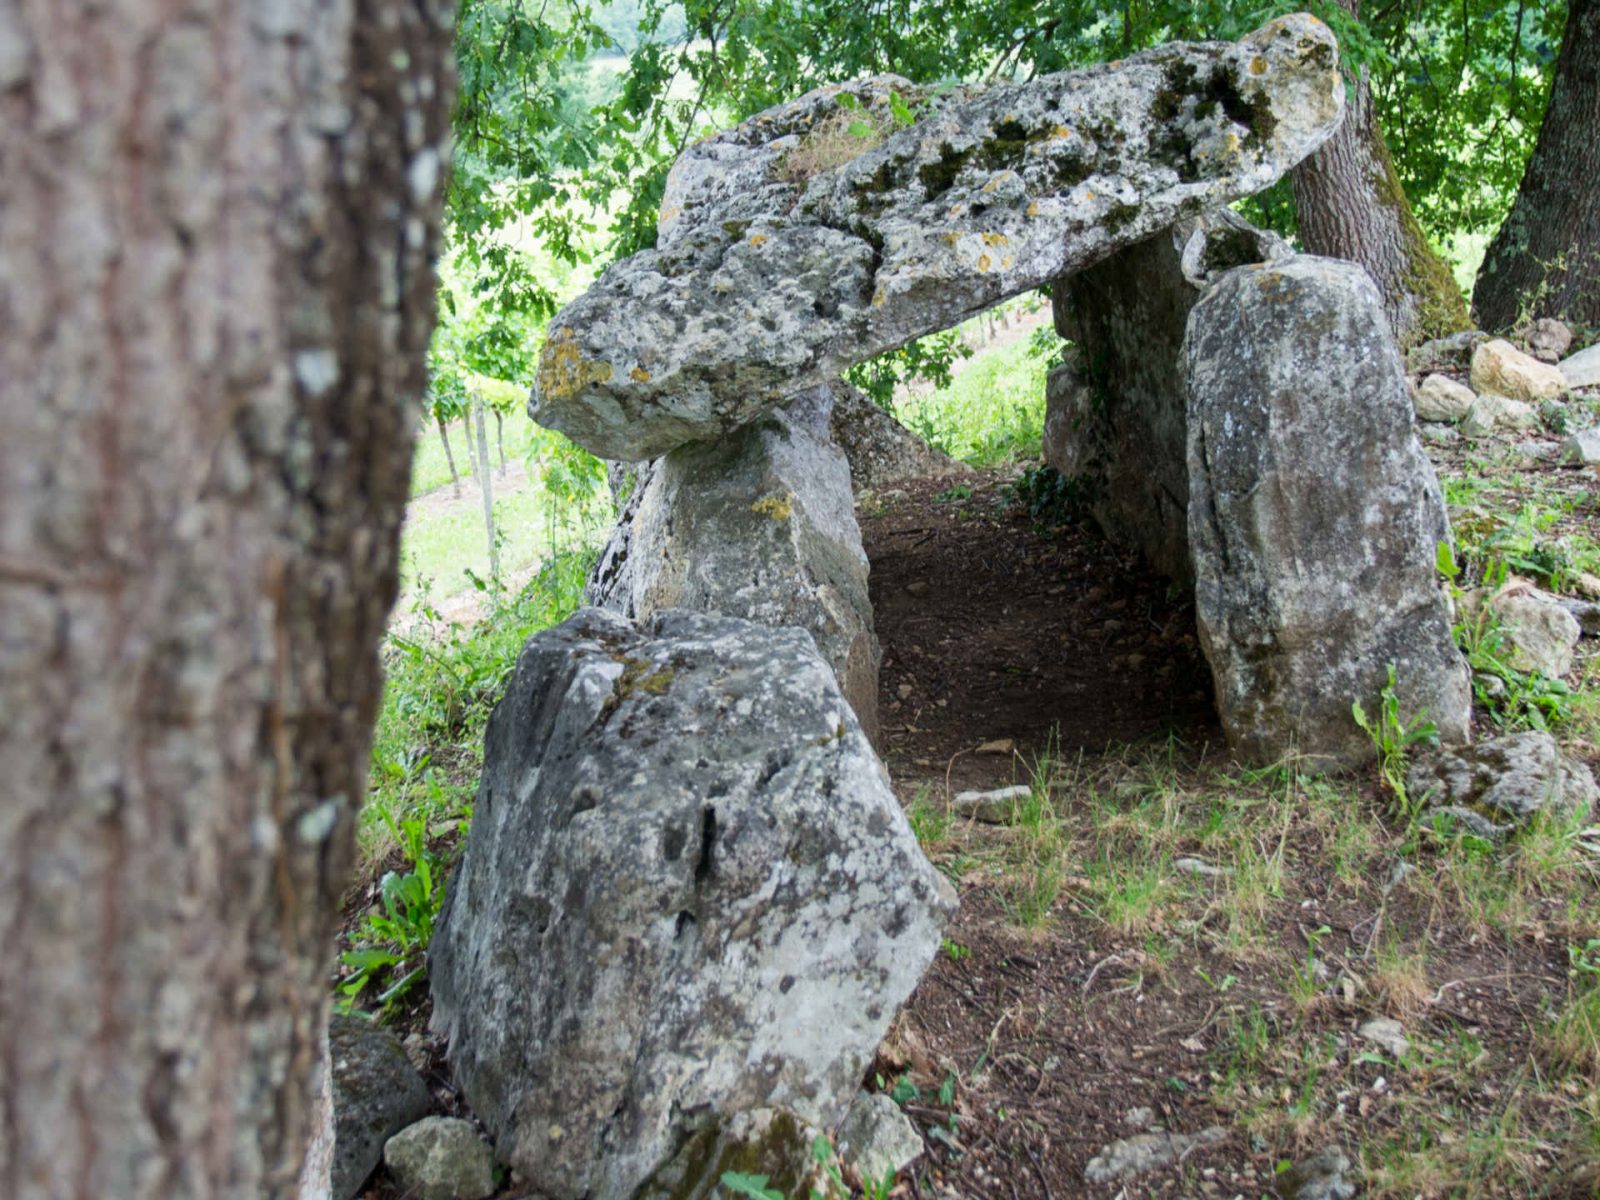 The dolmen loop